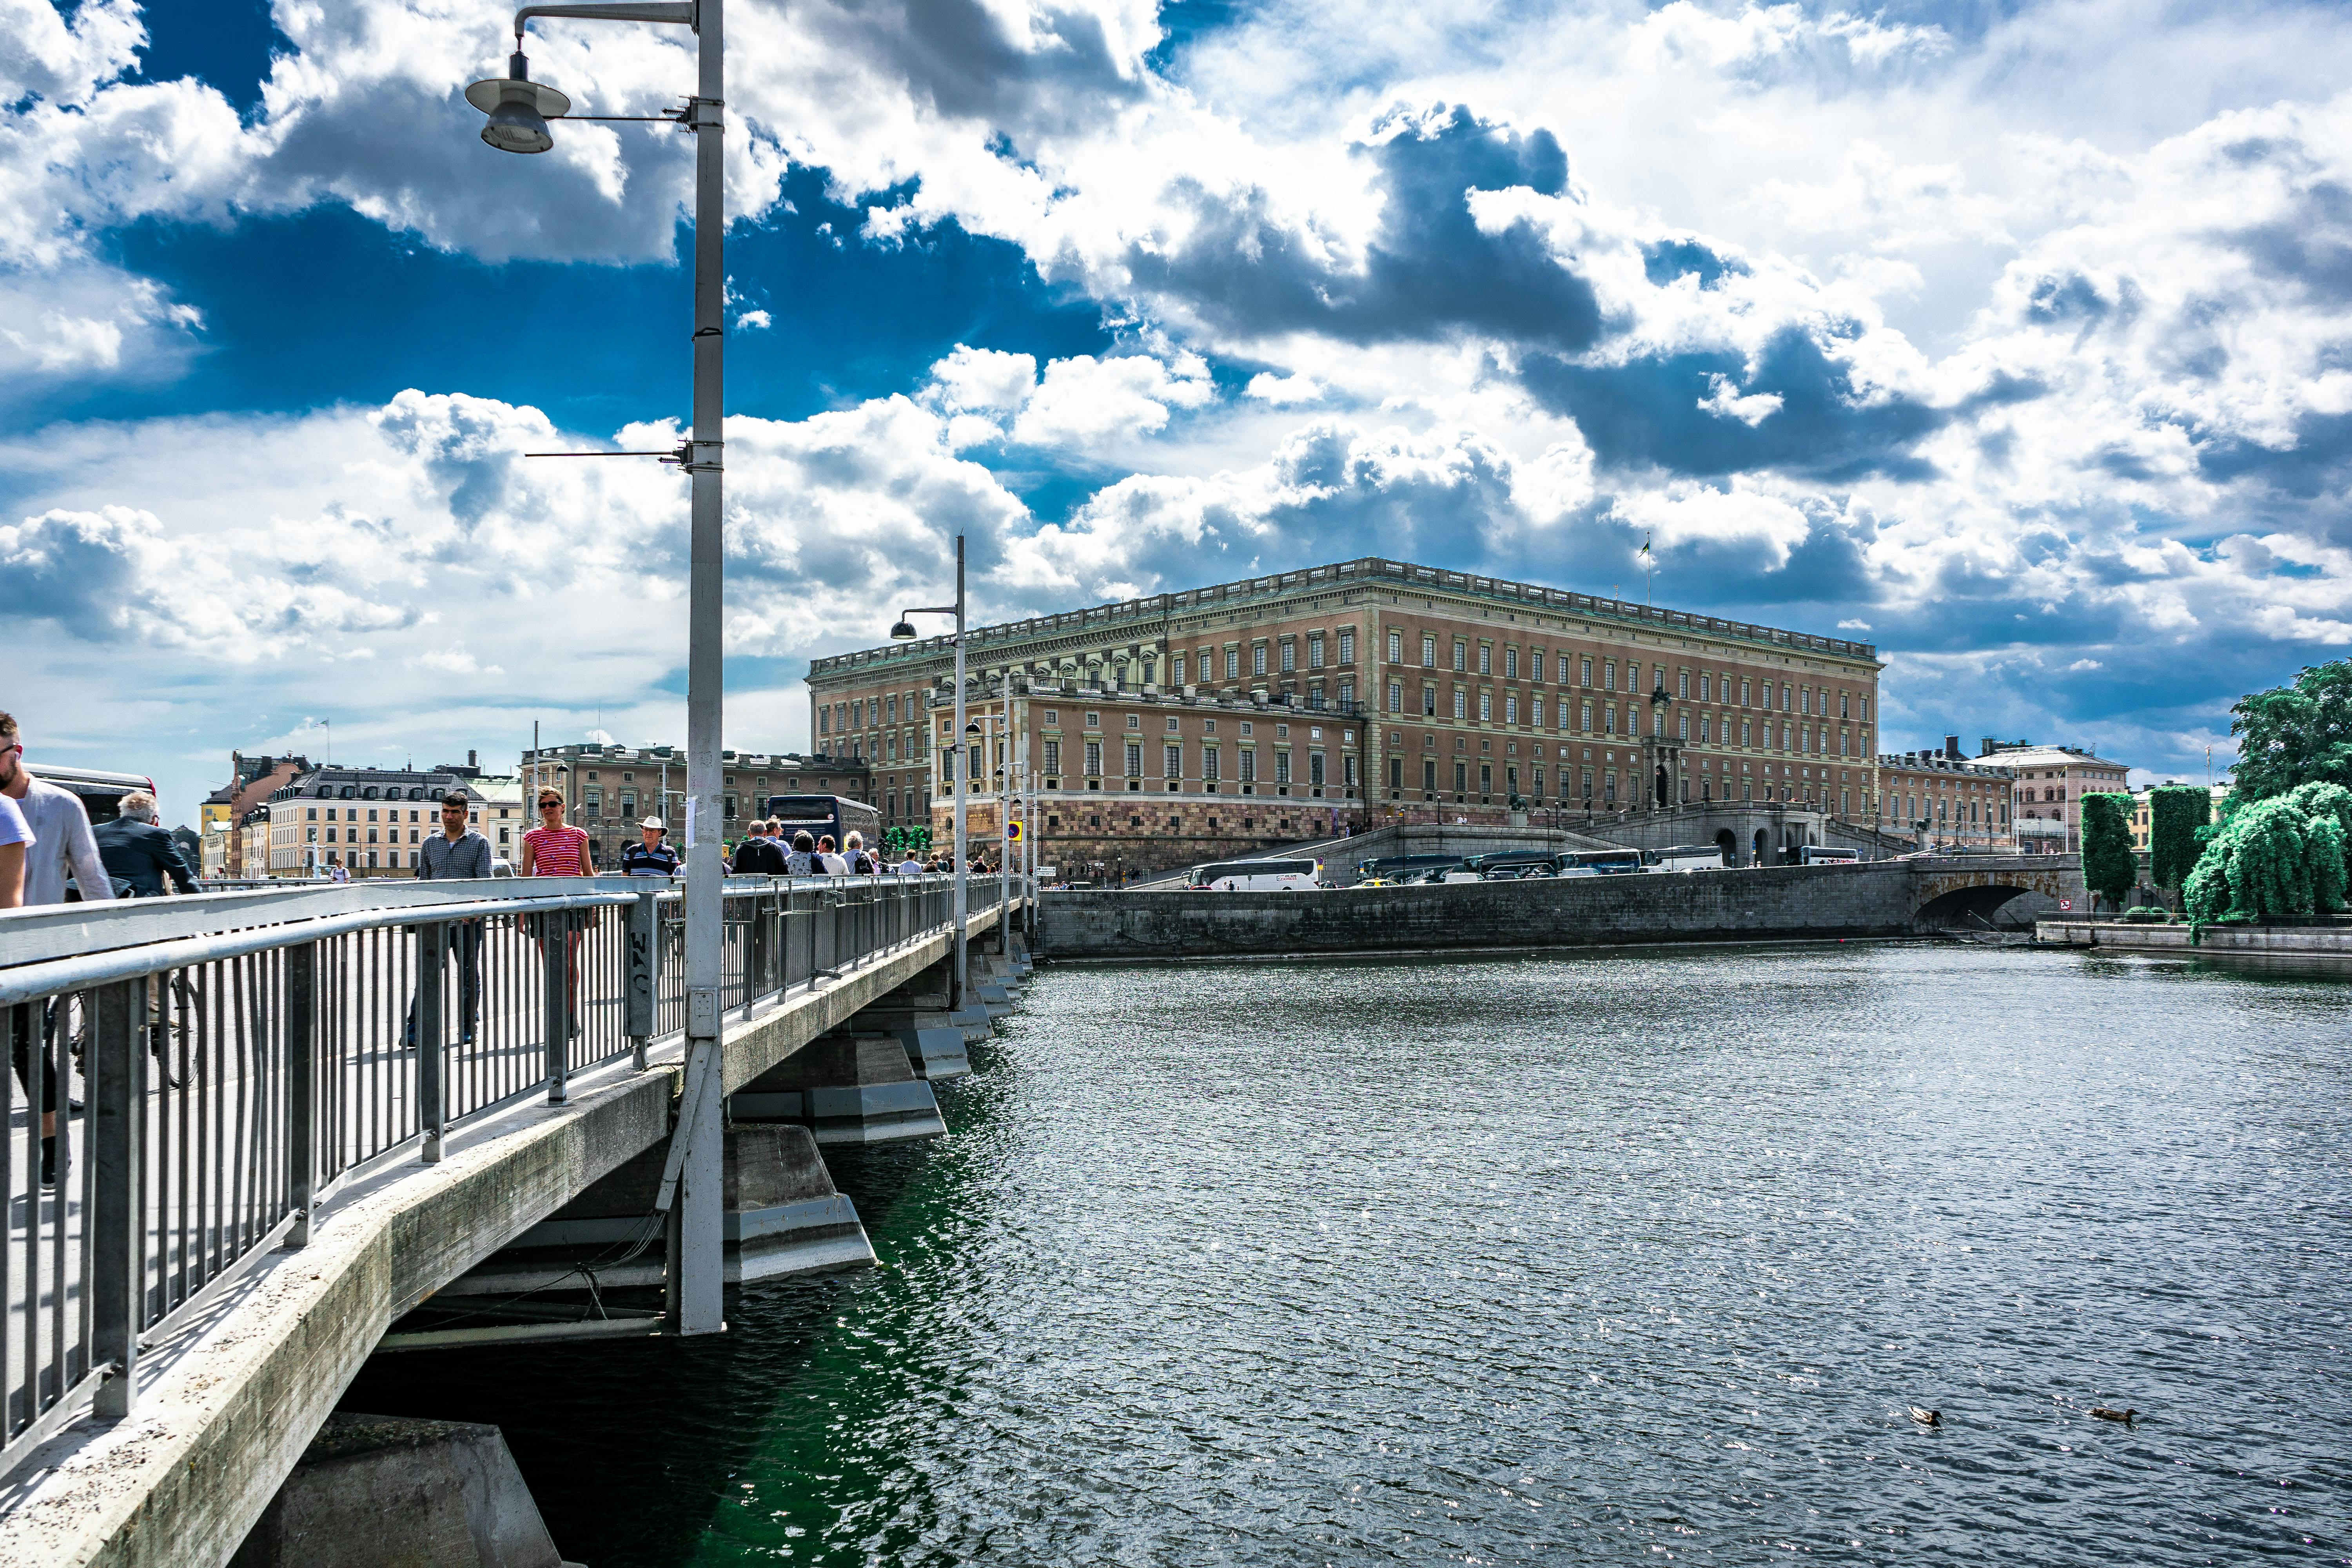 Síndrome de Estocolmo excursão a pé privada pela cidade